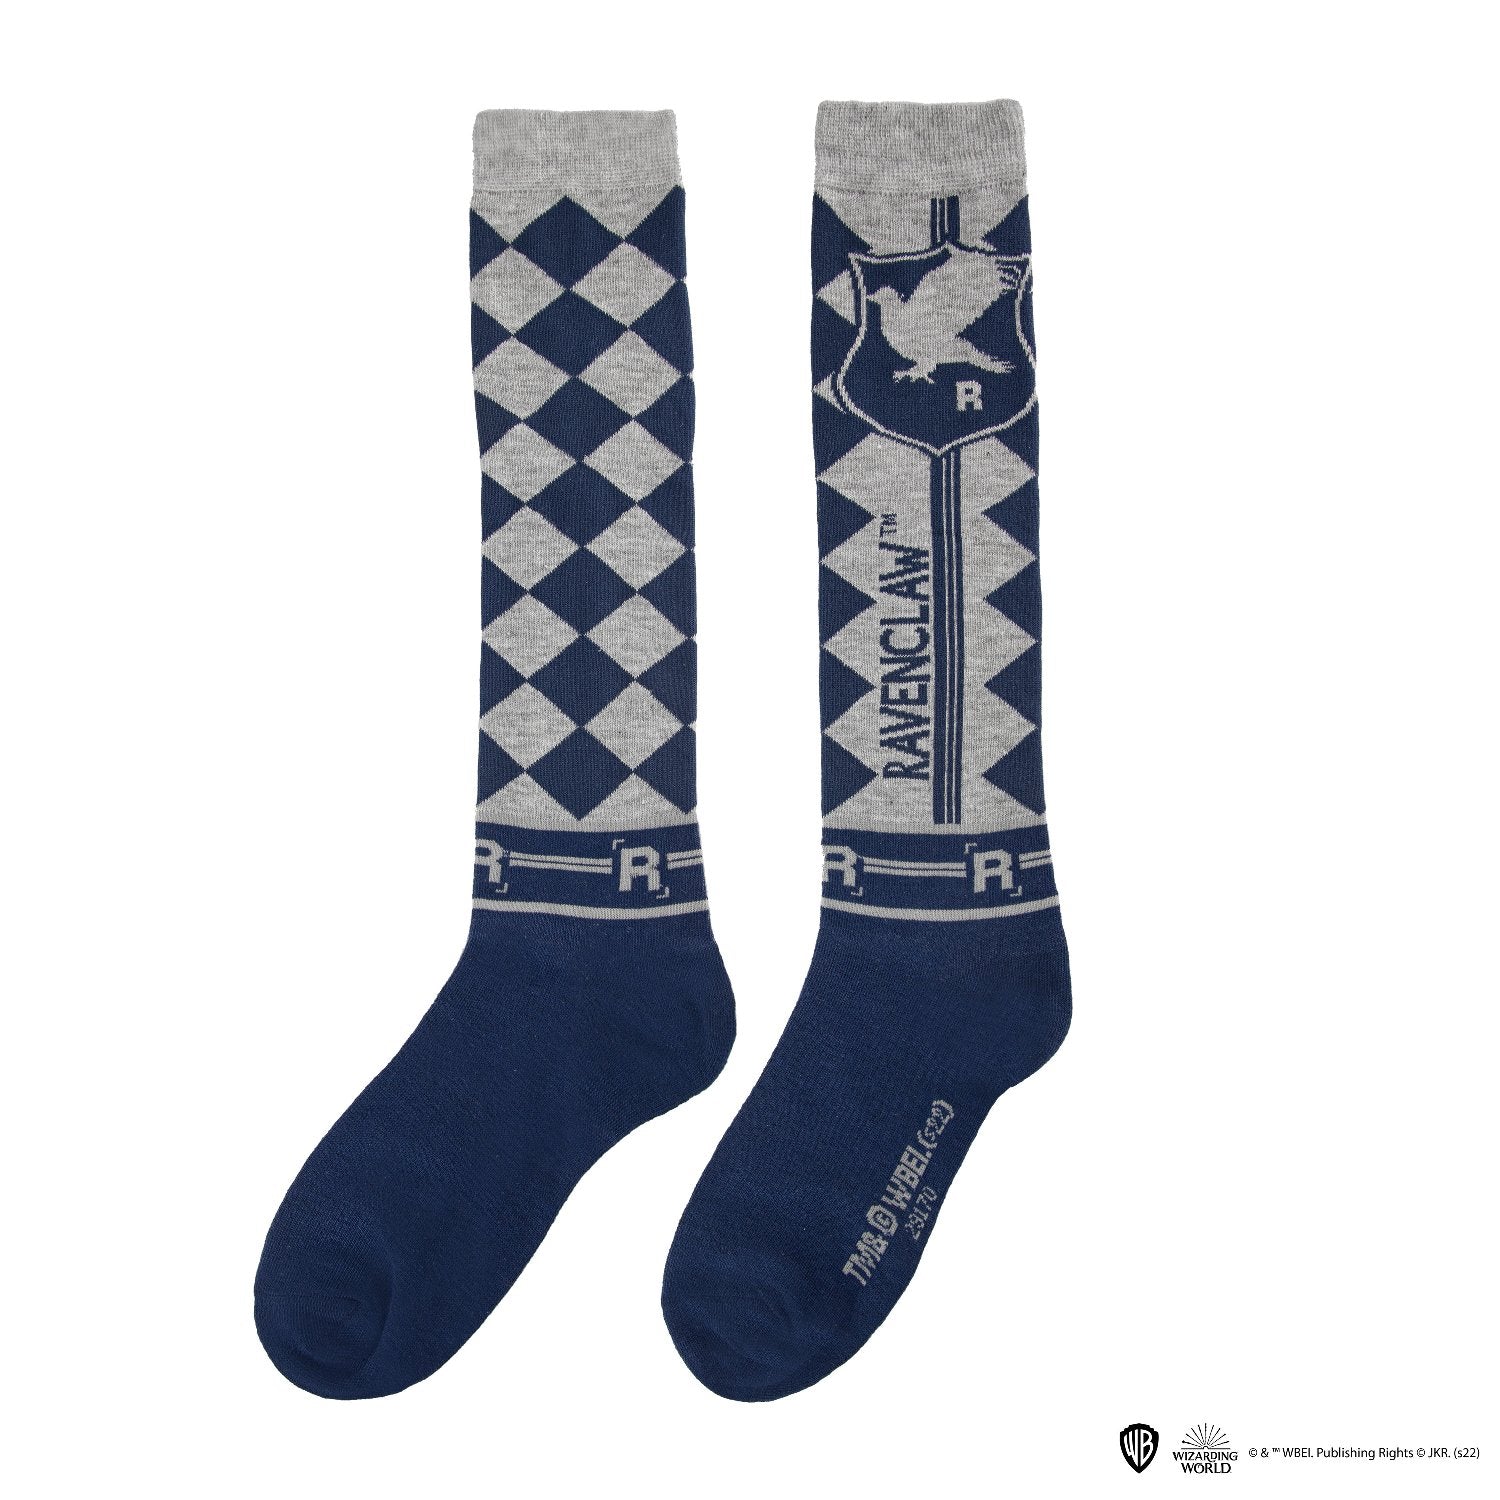  Harry Potter: Ravenclaw Knee High Socks Set of 3  4895205609242